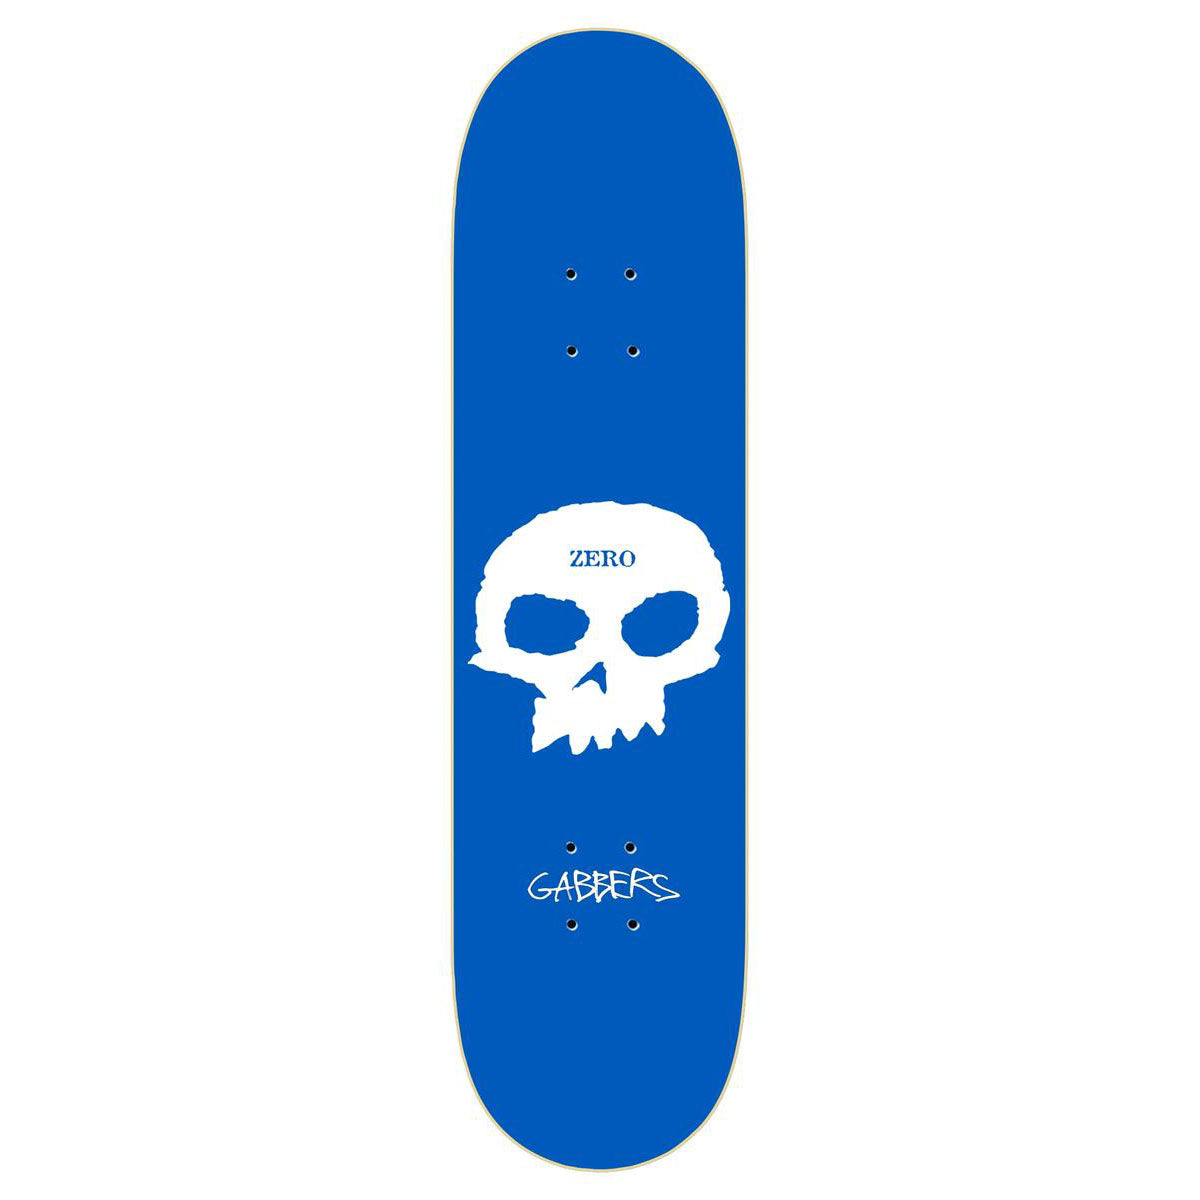 Zero Gabbers Signature Skull Skateboard Deck